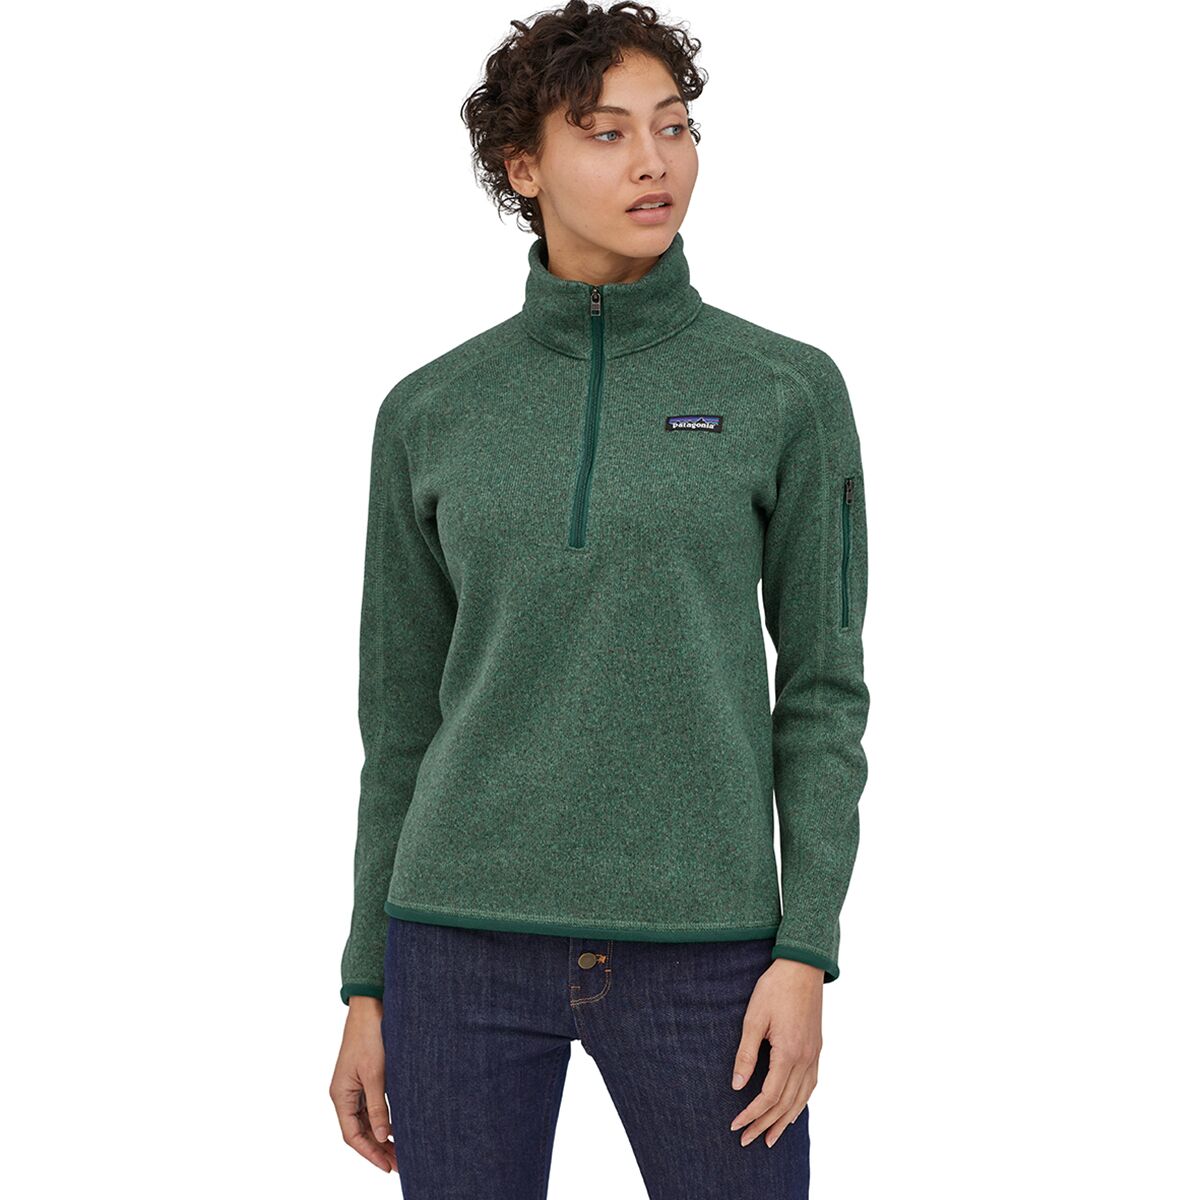 Better Sweater 1/4-Zip Fleece Jacket - Women